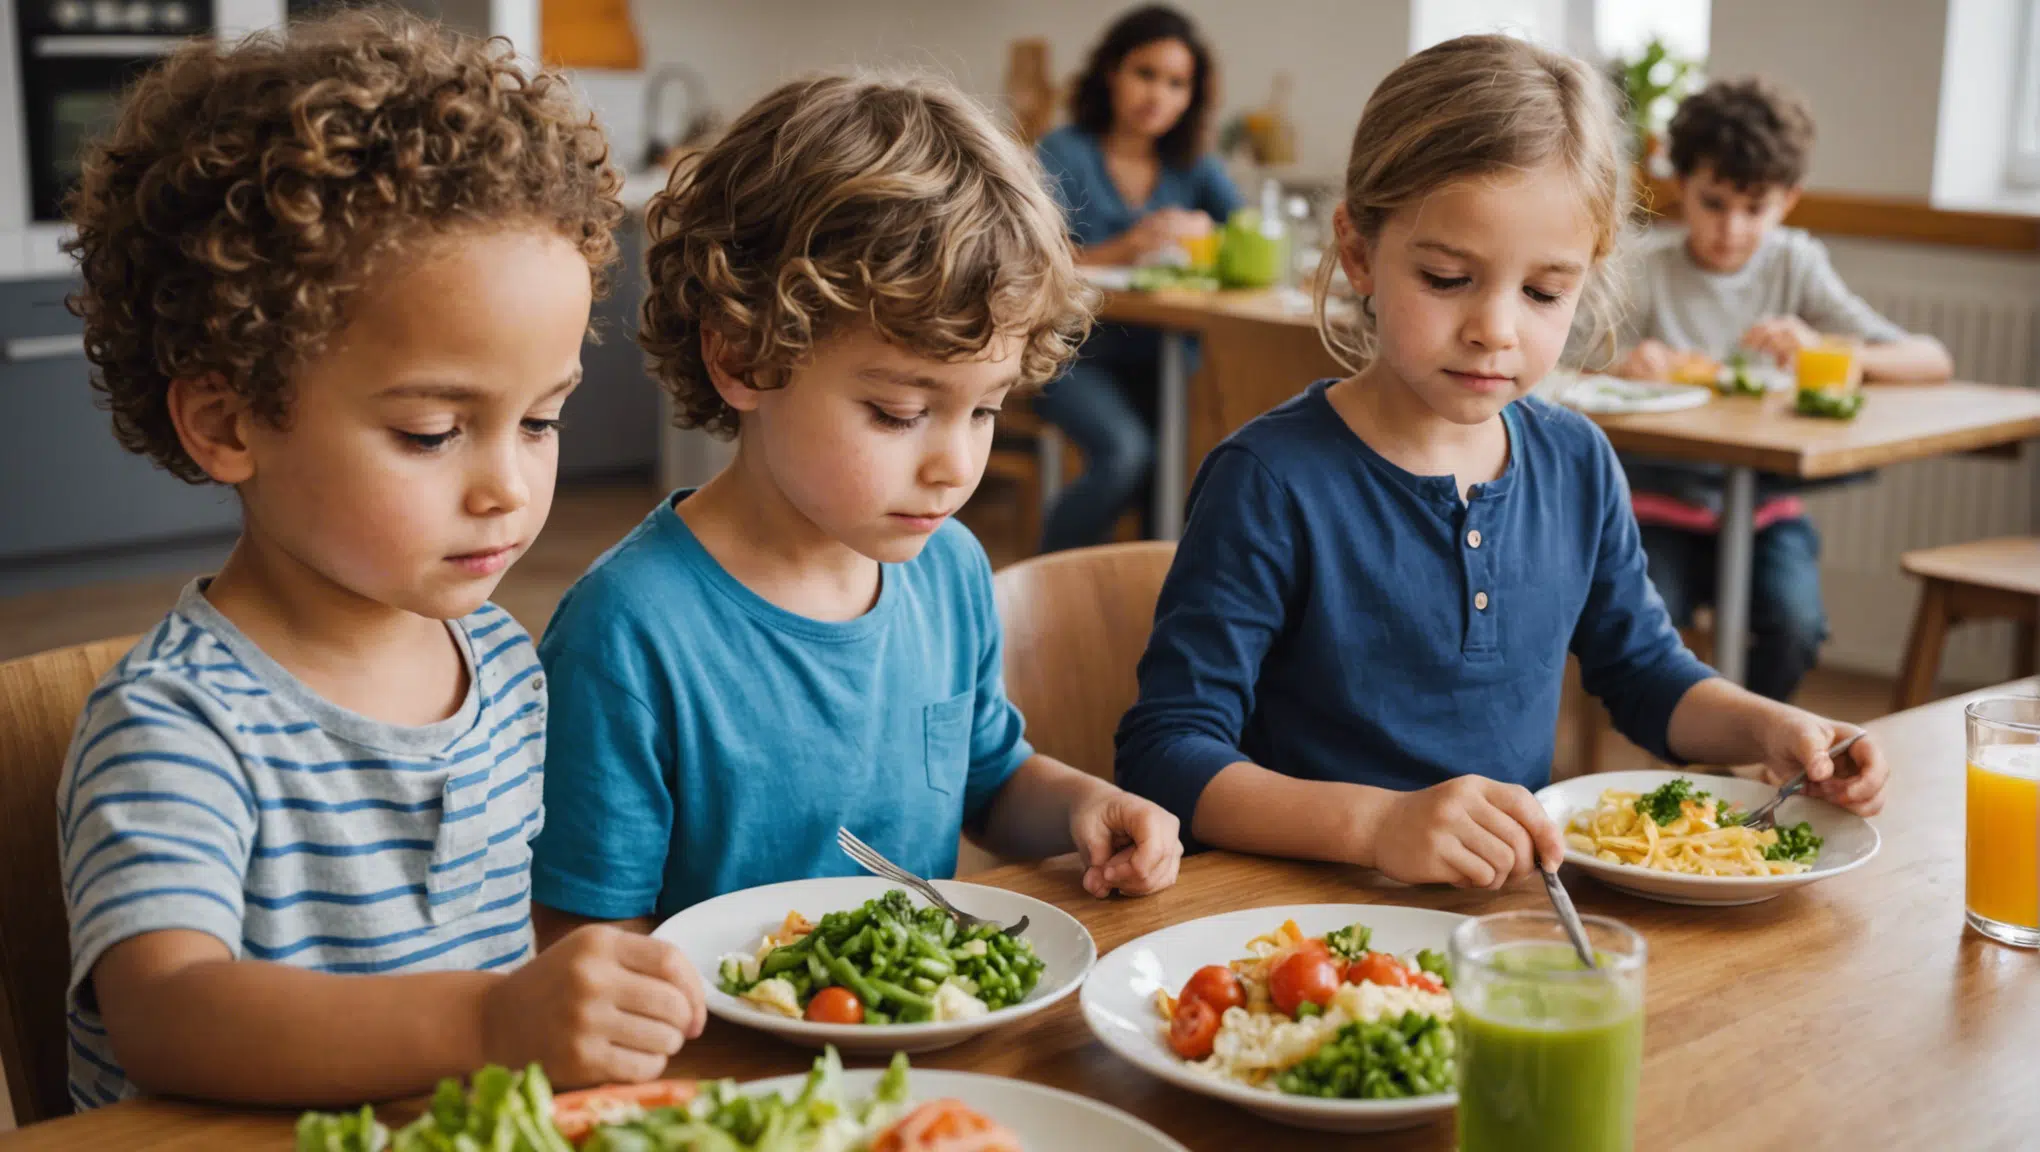 découvrez des astuces pour impliquer les enfants dans la préparation des repas et développer leur autonomie en cuisine.